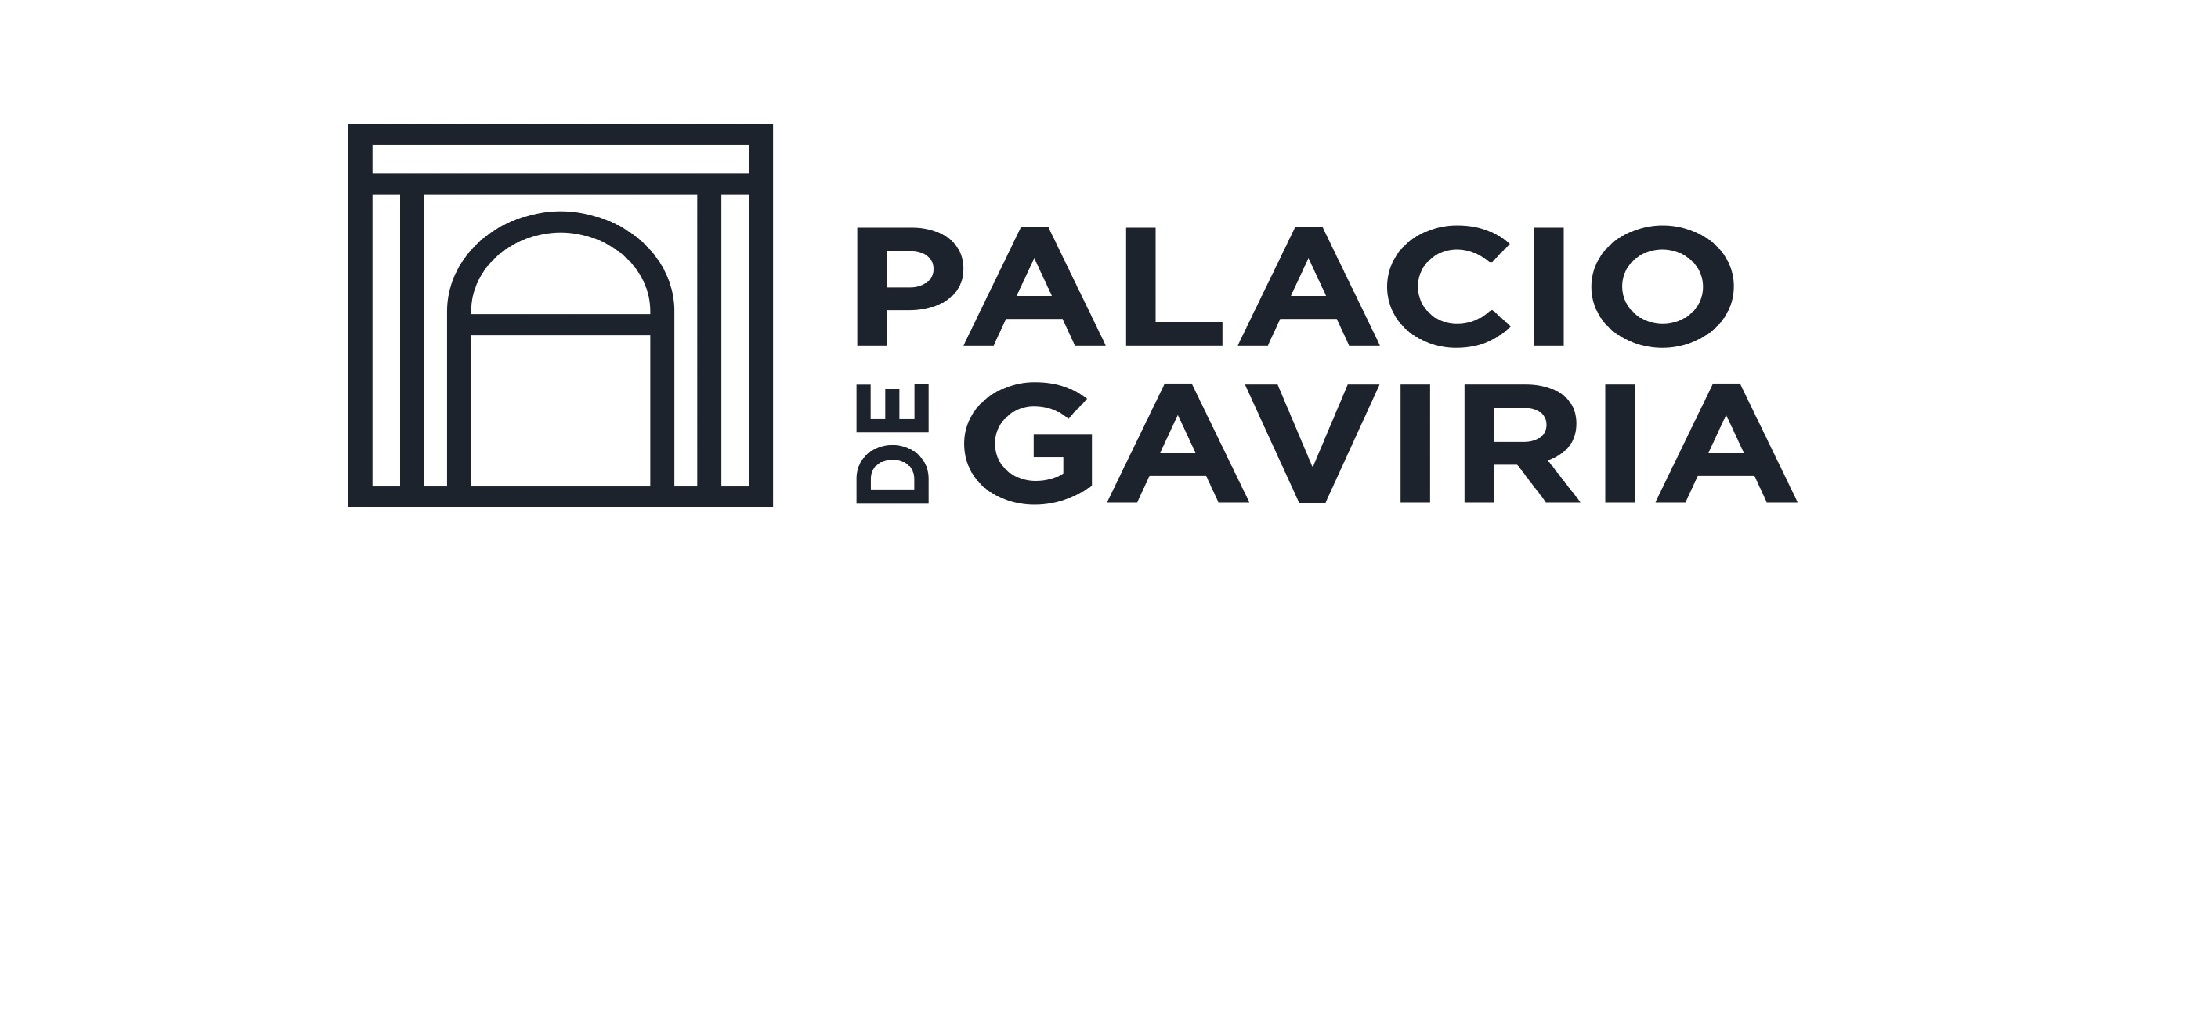 Palacio de Gaviria